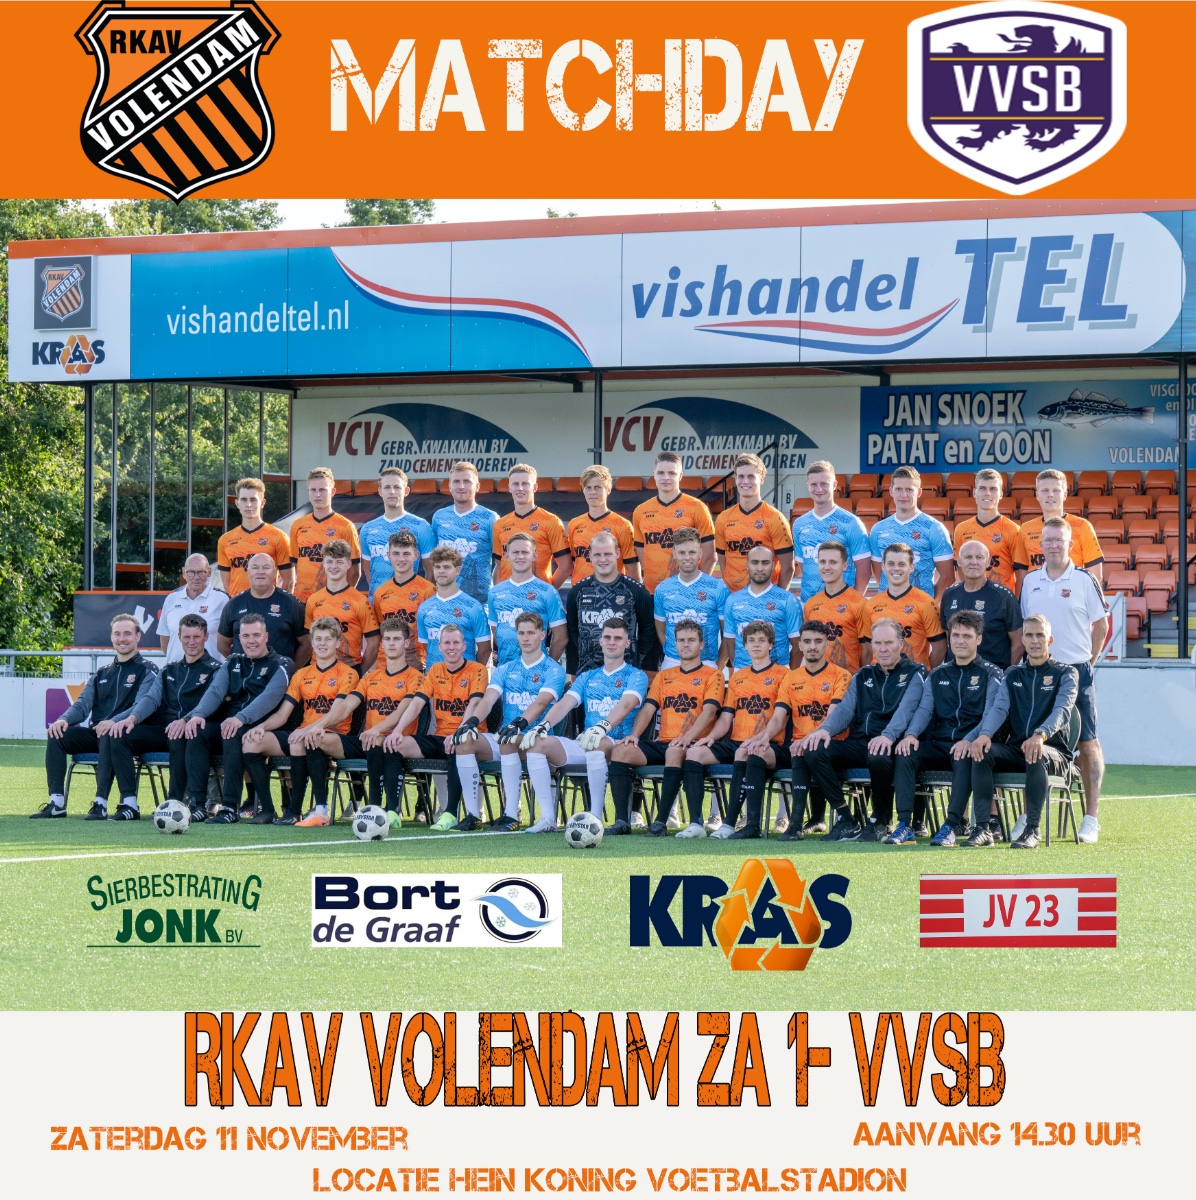 Rkav Volendam- VVSB